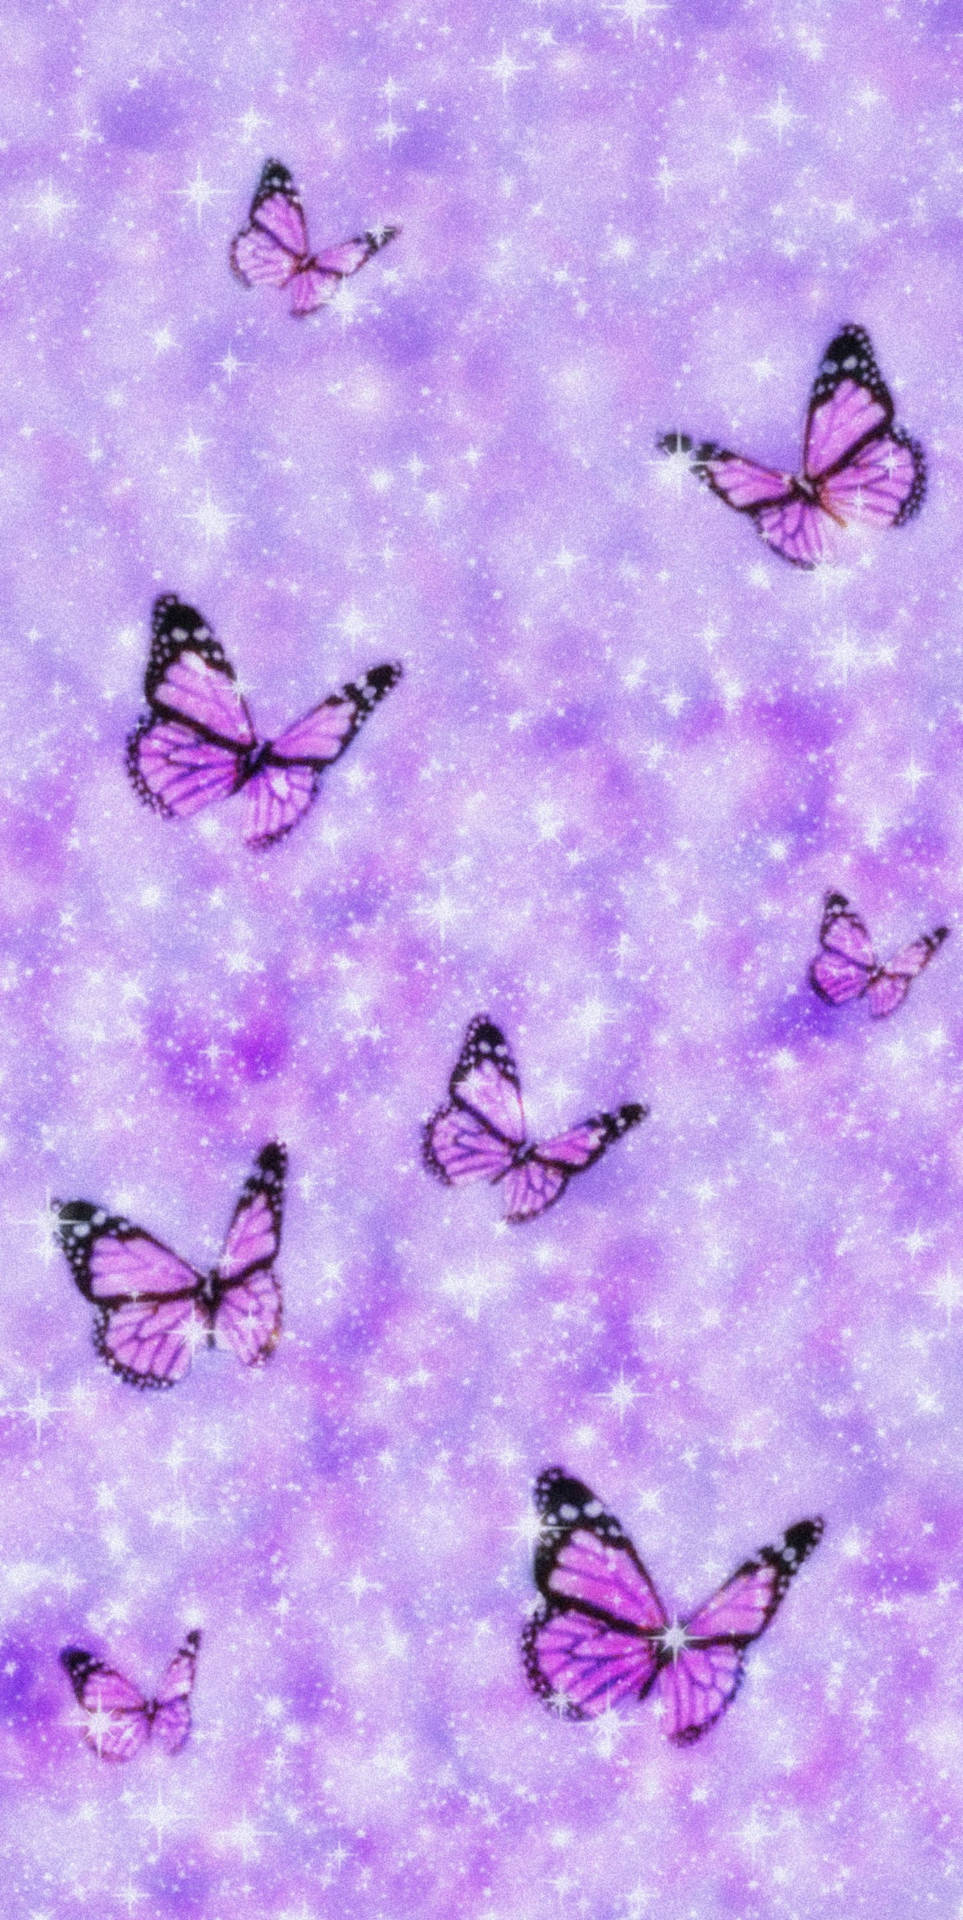 Free Purple Butterfly Phone Wallpaper Downloads, [100+] Purple Butterfly  Phone Wallpapers for FREE 